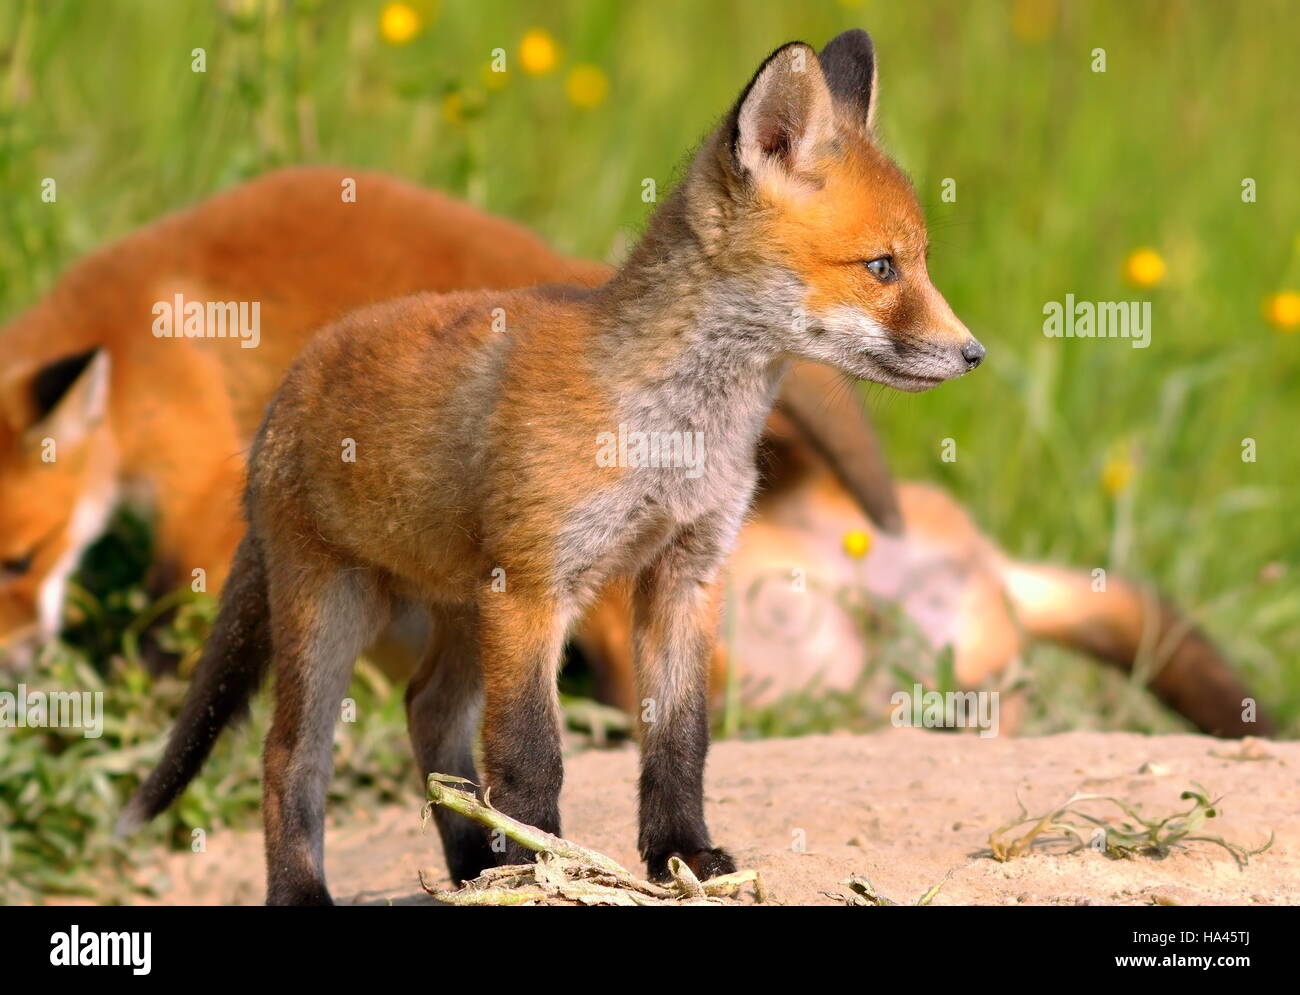 Jeune renard roux européen près du terrier ( Vulpes vulpes ) Banque D'Images